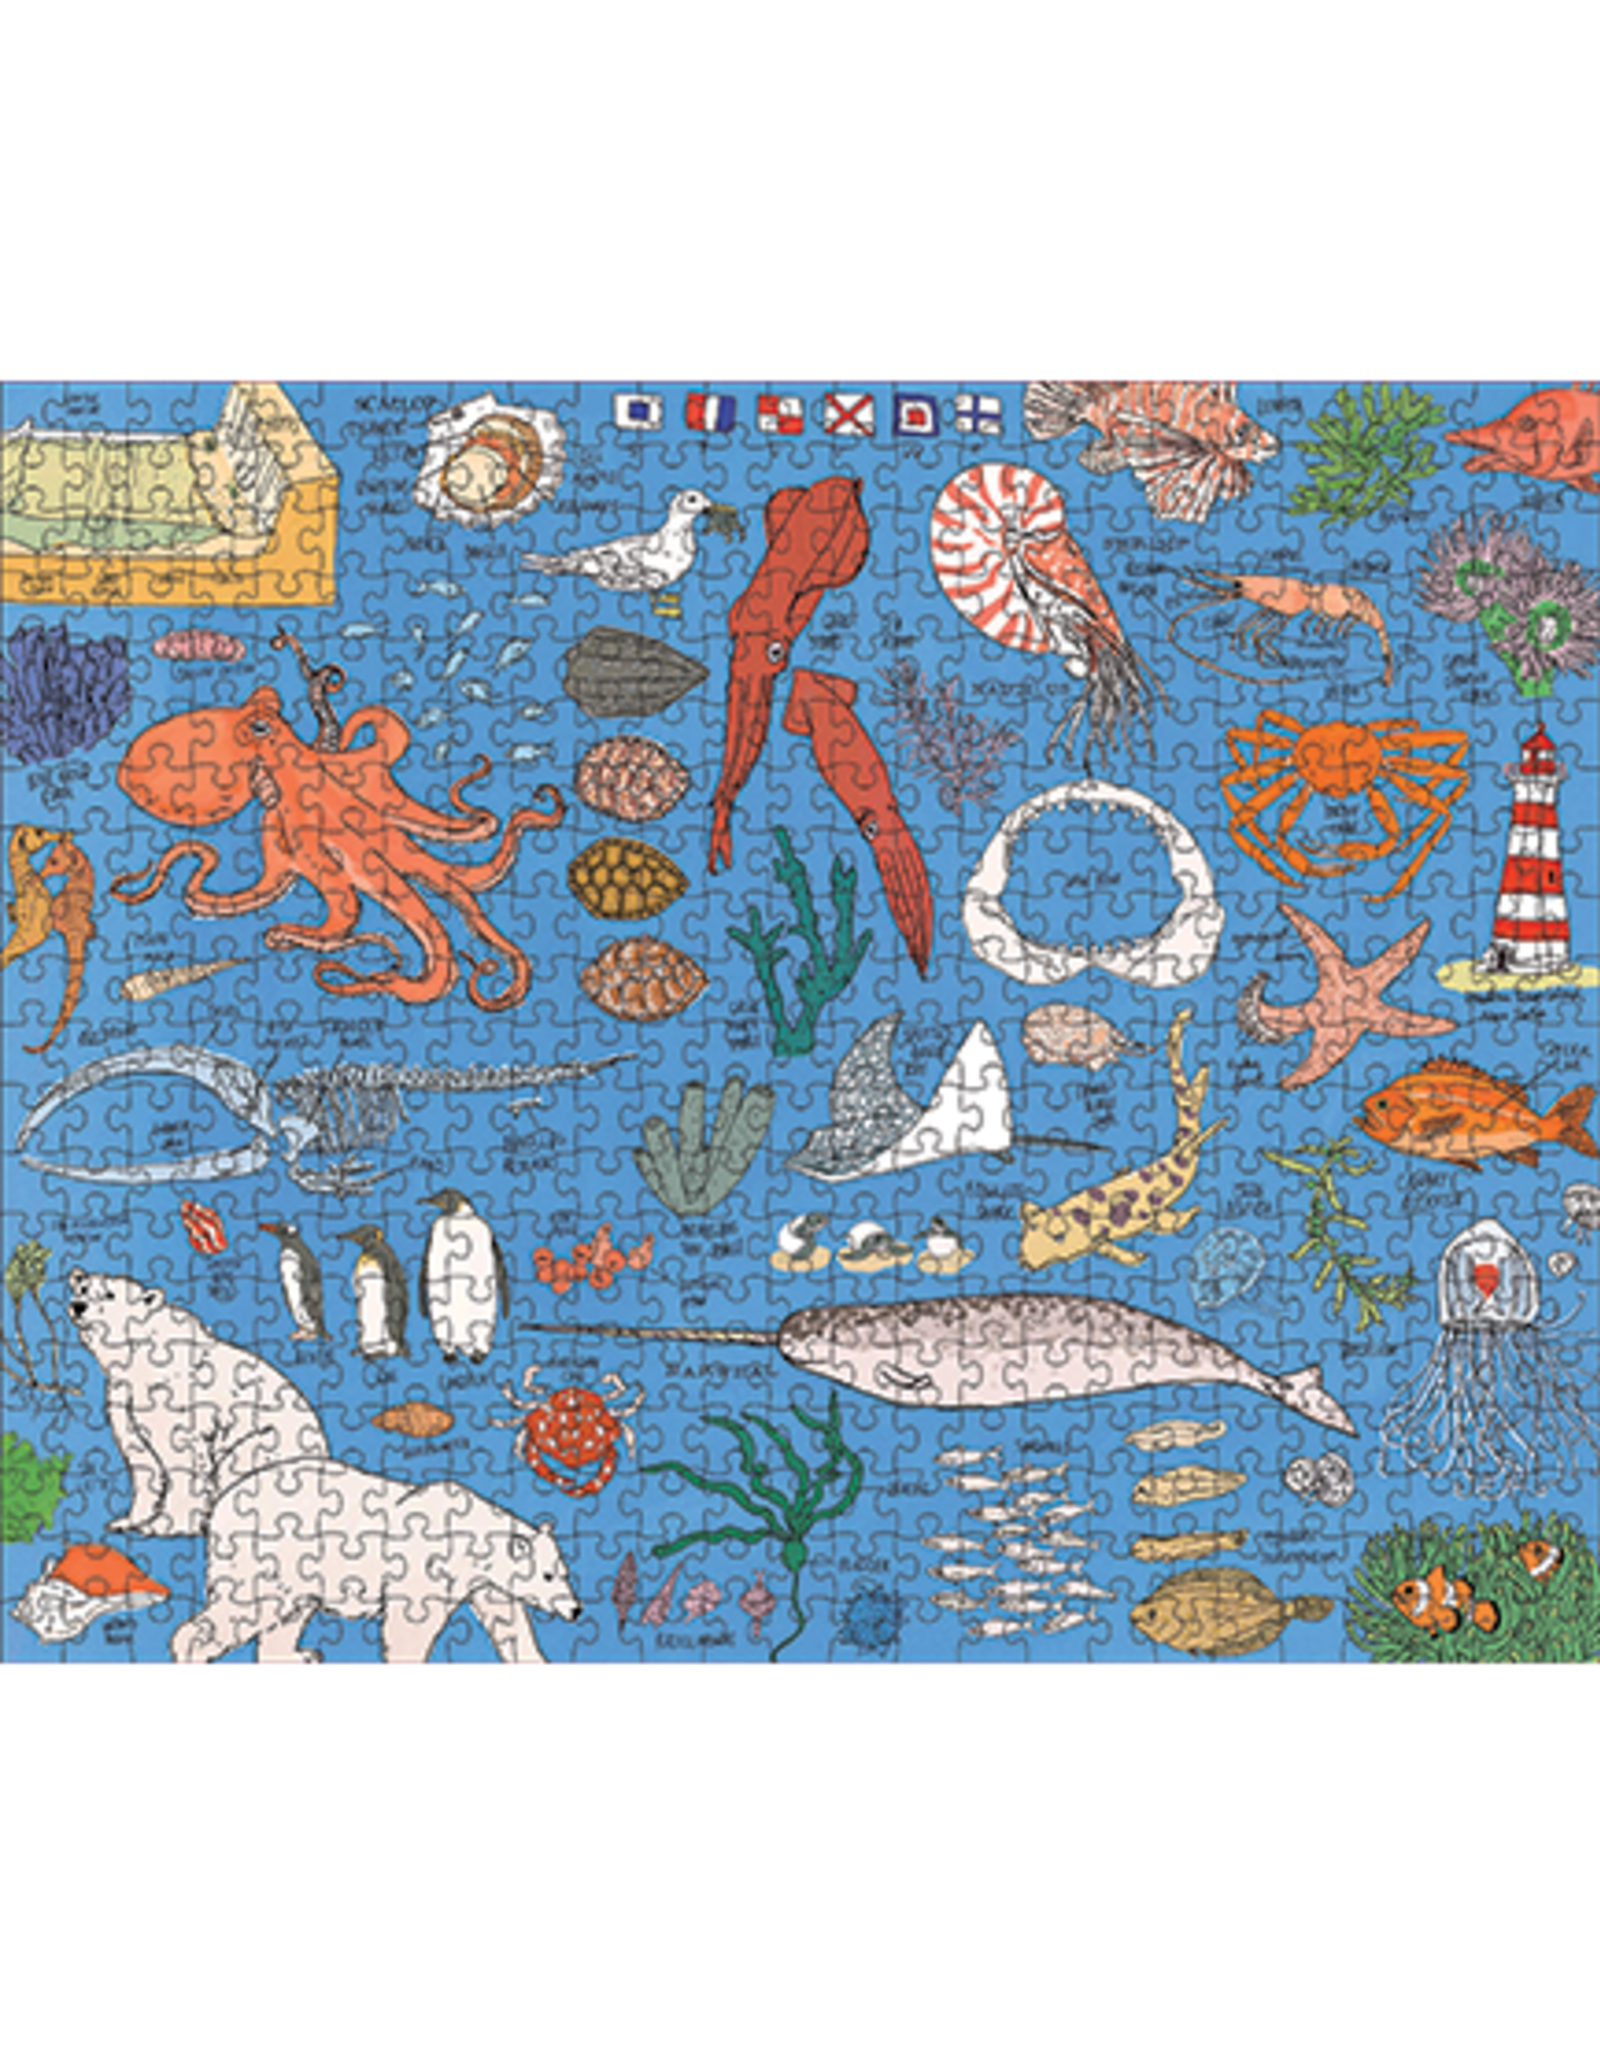 Ocean Anatomy 500 Piece Puzzle